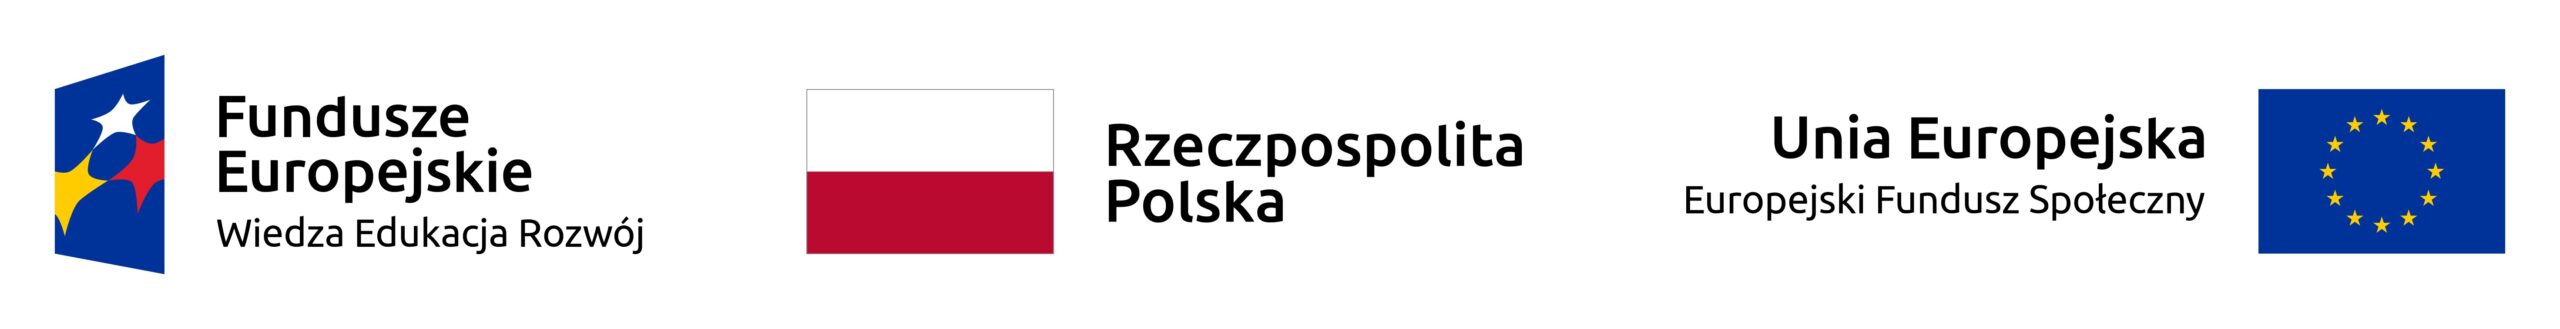 Fundusze Europejskie, Rzeczypospolita Polska, Unia Europejska